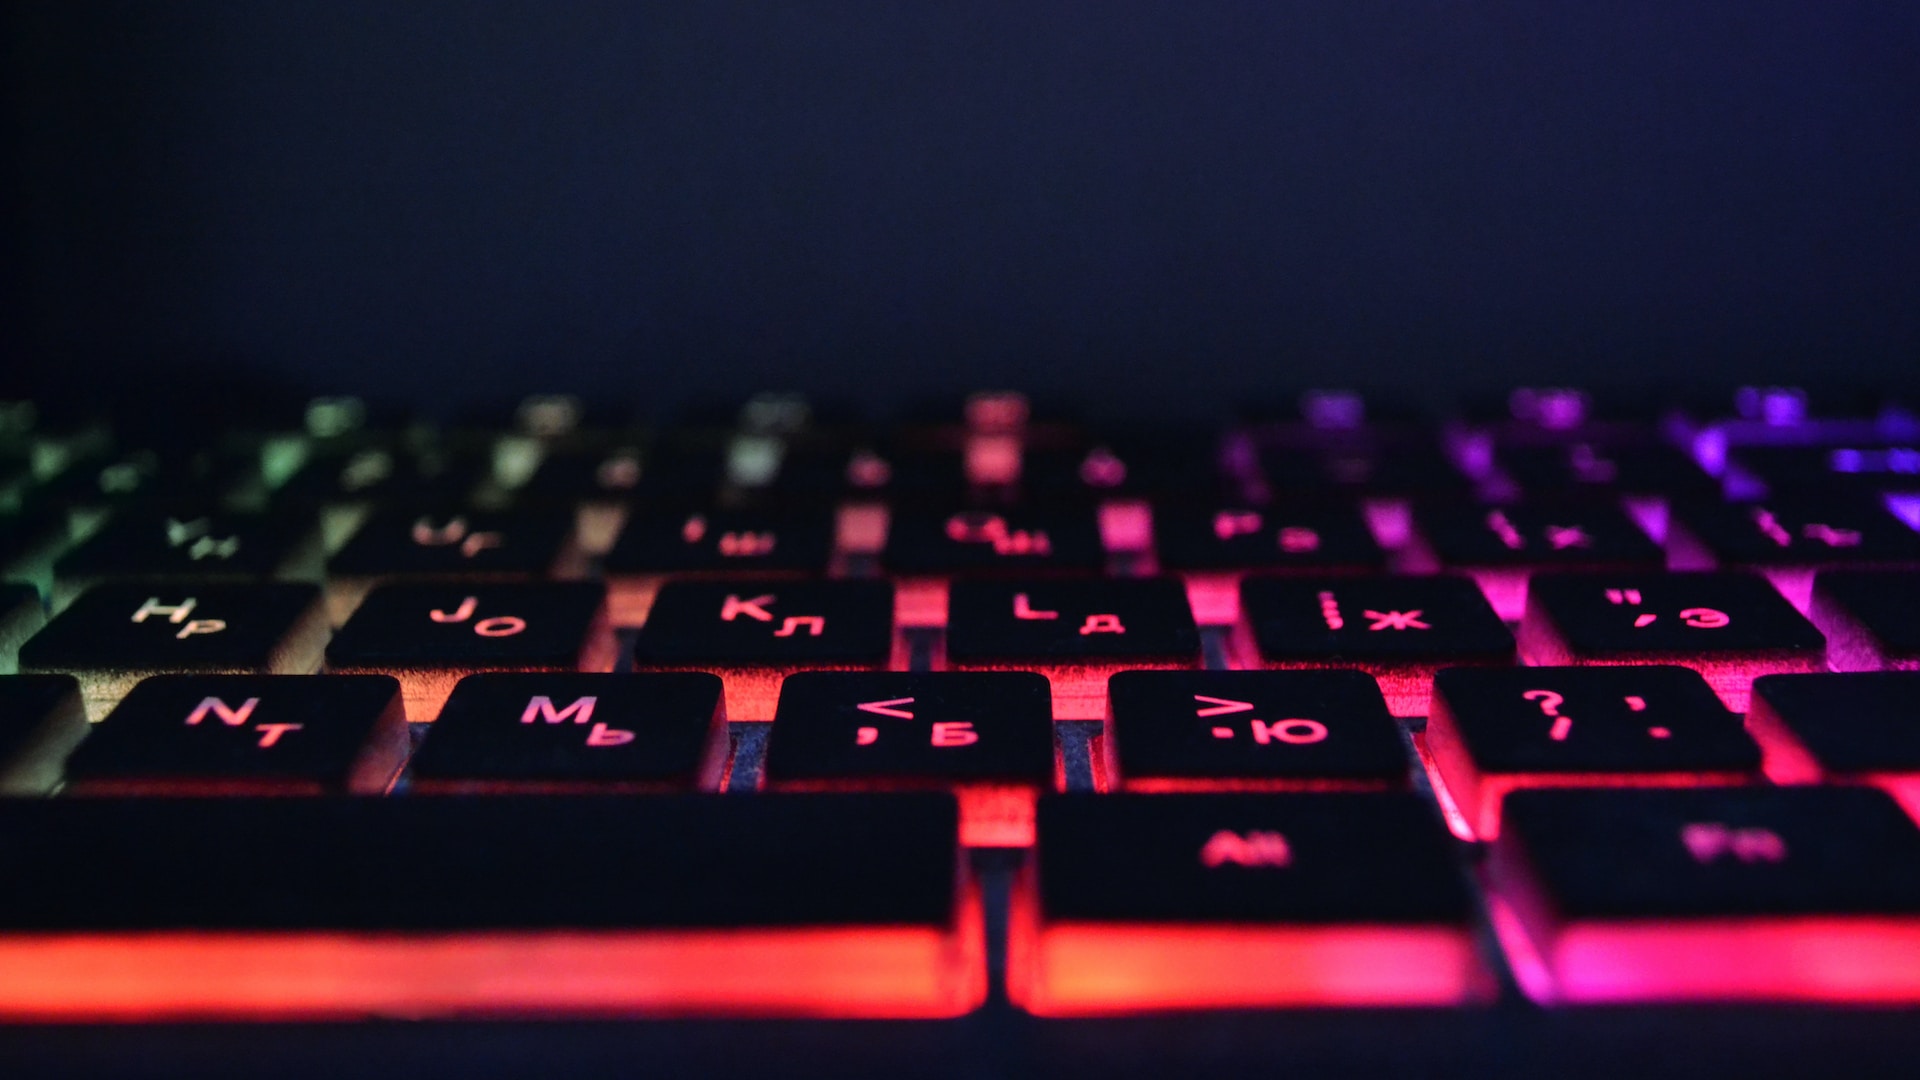 how to change backlit keyboard color